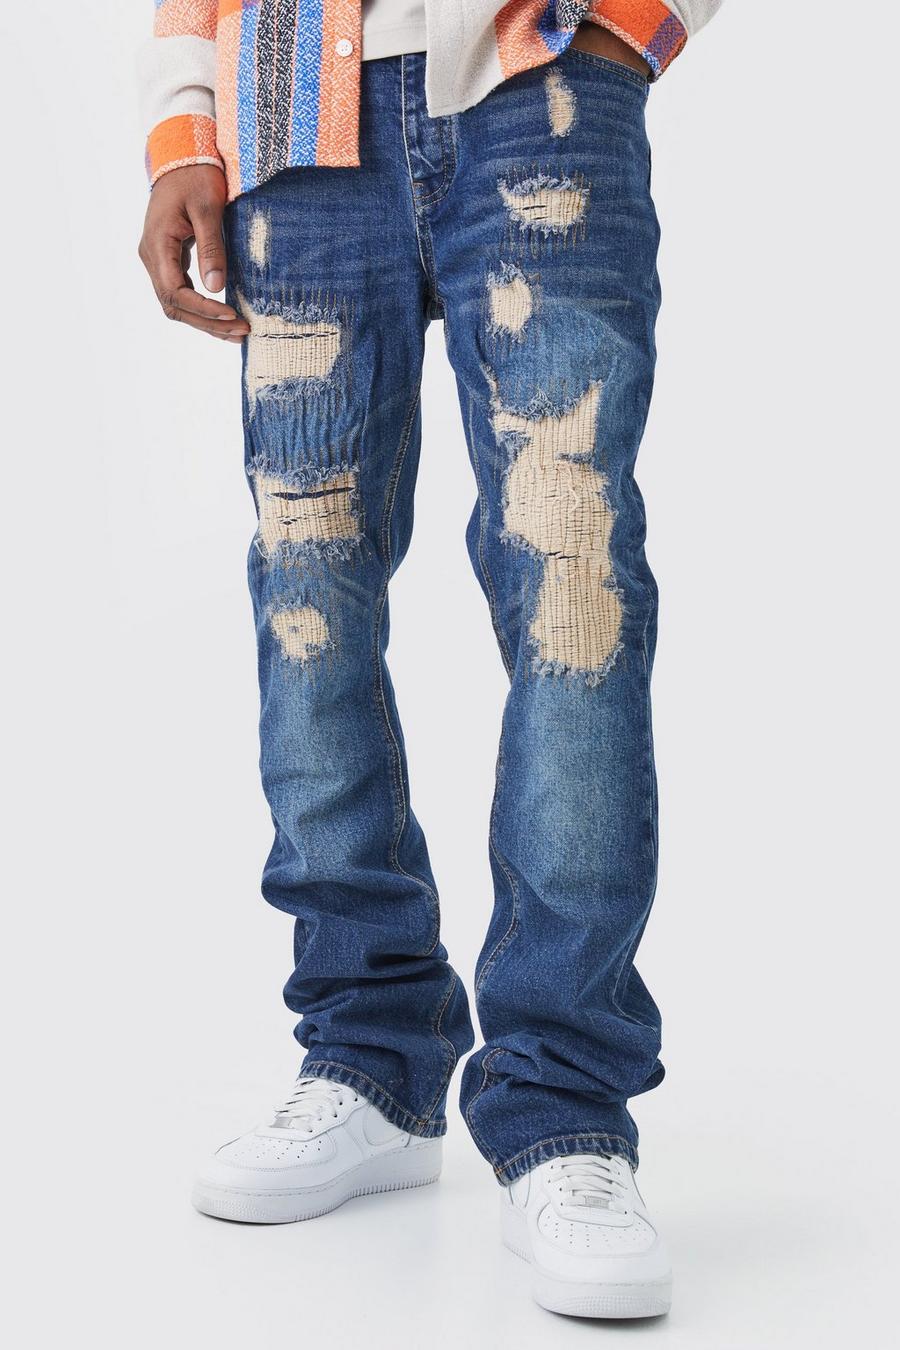 Jeans Tall Slim Fit in denim rigido con strappi riparati, Dark blue